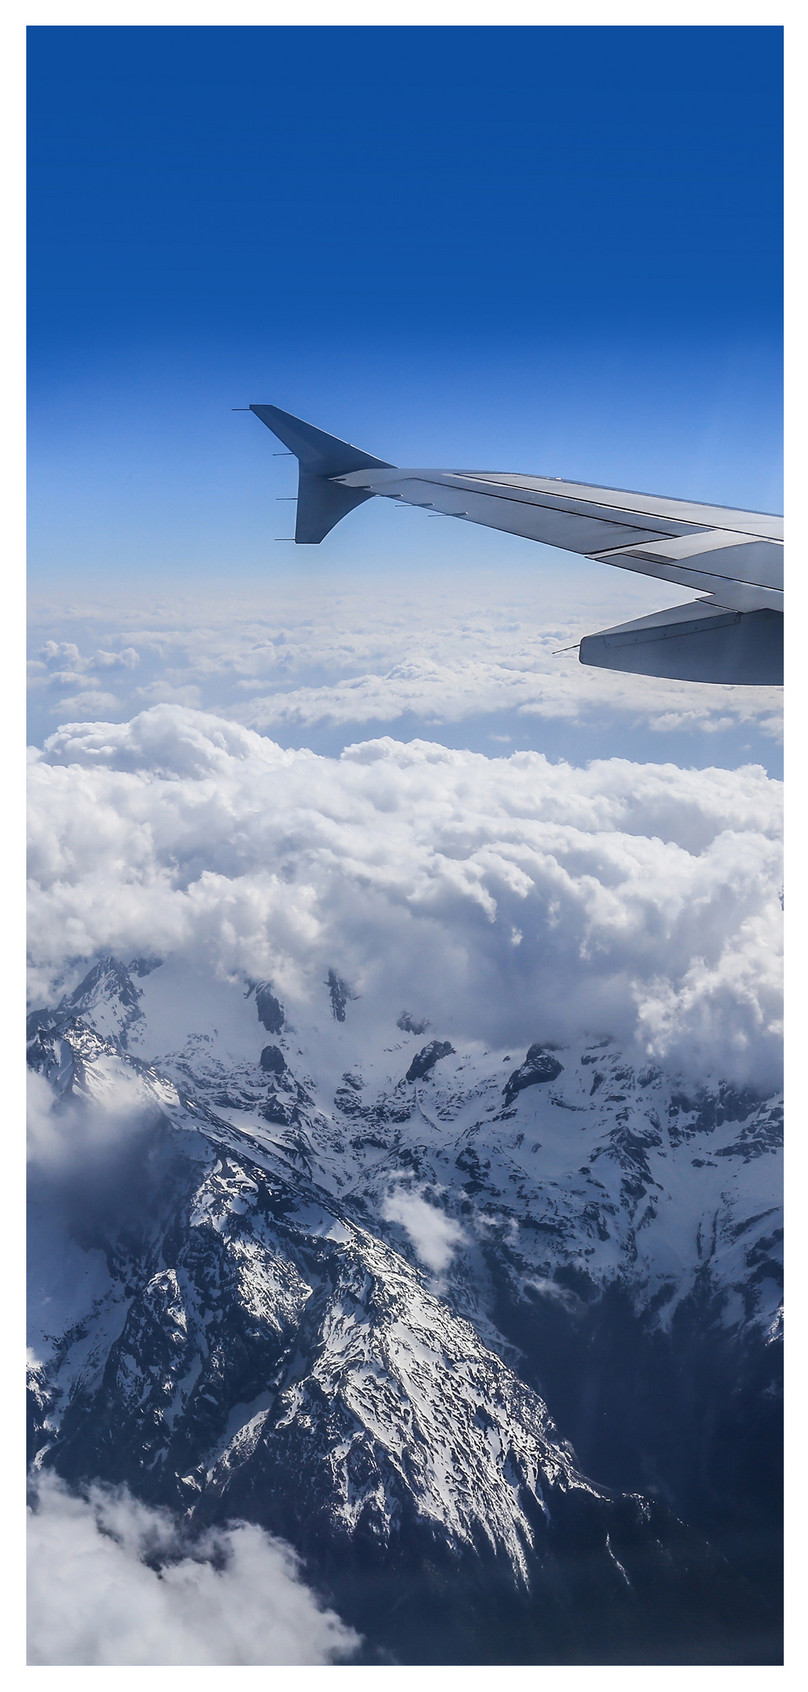 雲海冰山手機壁紙圖片素材 Jpg圖片尺寸1125 2436px 高清圖片